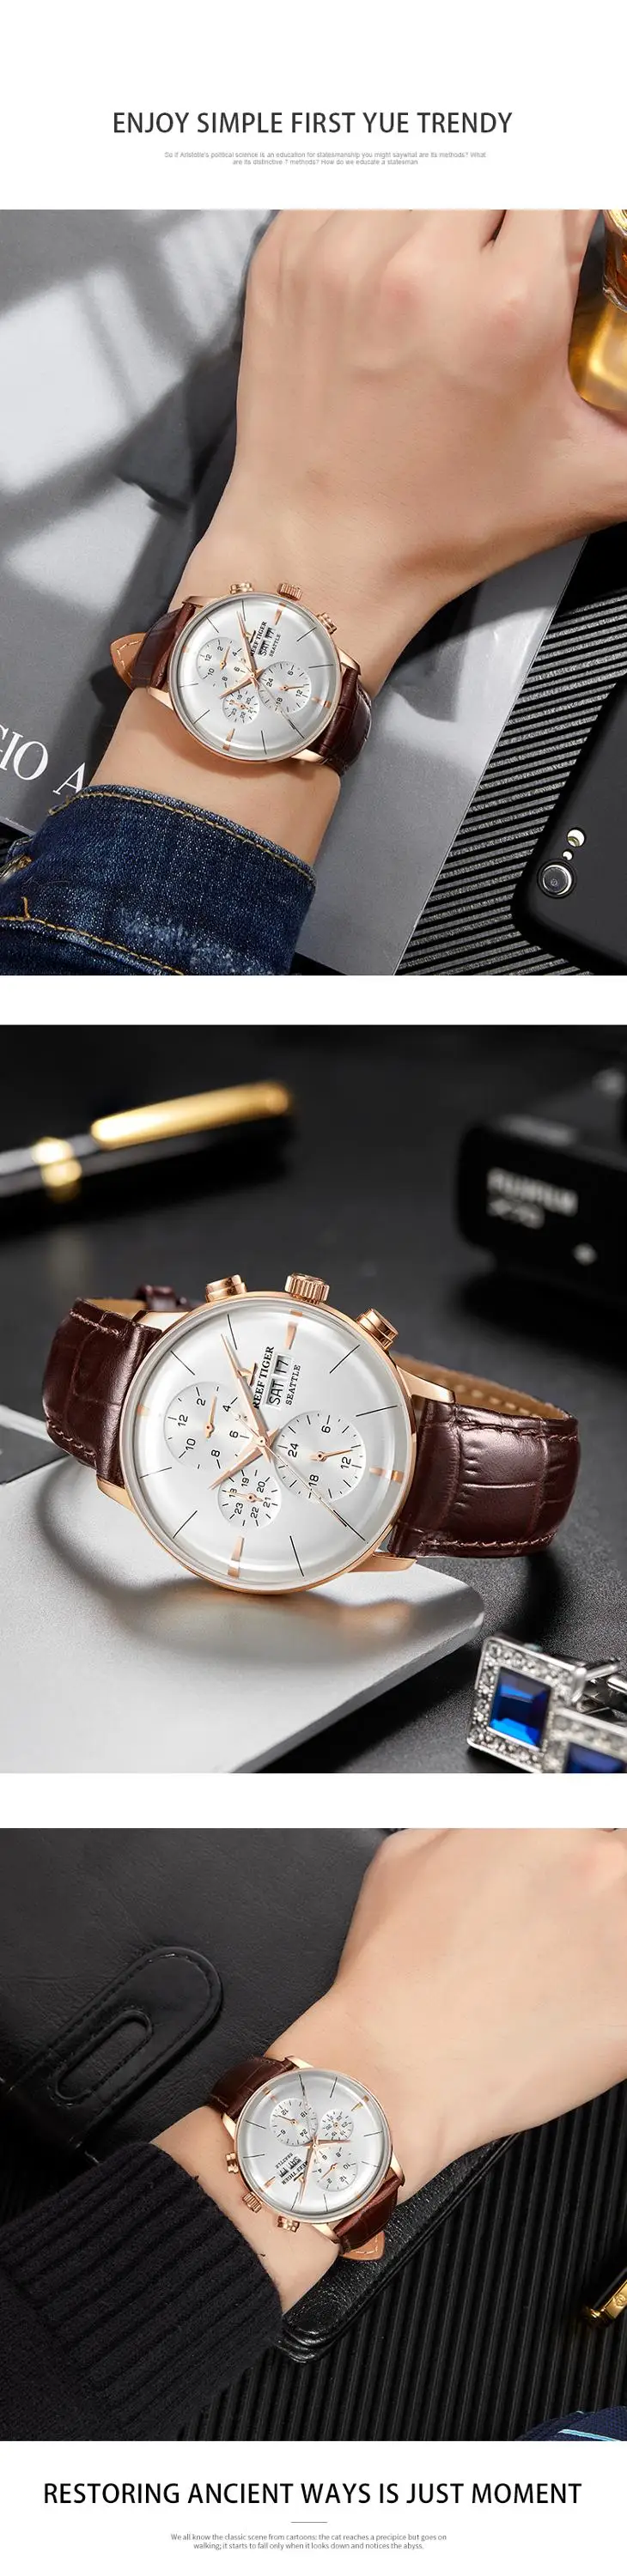 Риф Тигр/RT Топ бренд класса люкс автоматические часы Reloj Hombre многофункциональный кожаный ремешок Розовое золото модные часы RGA1699